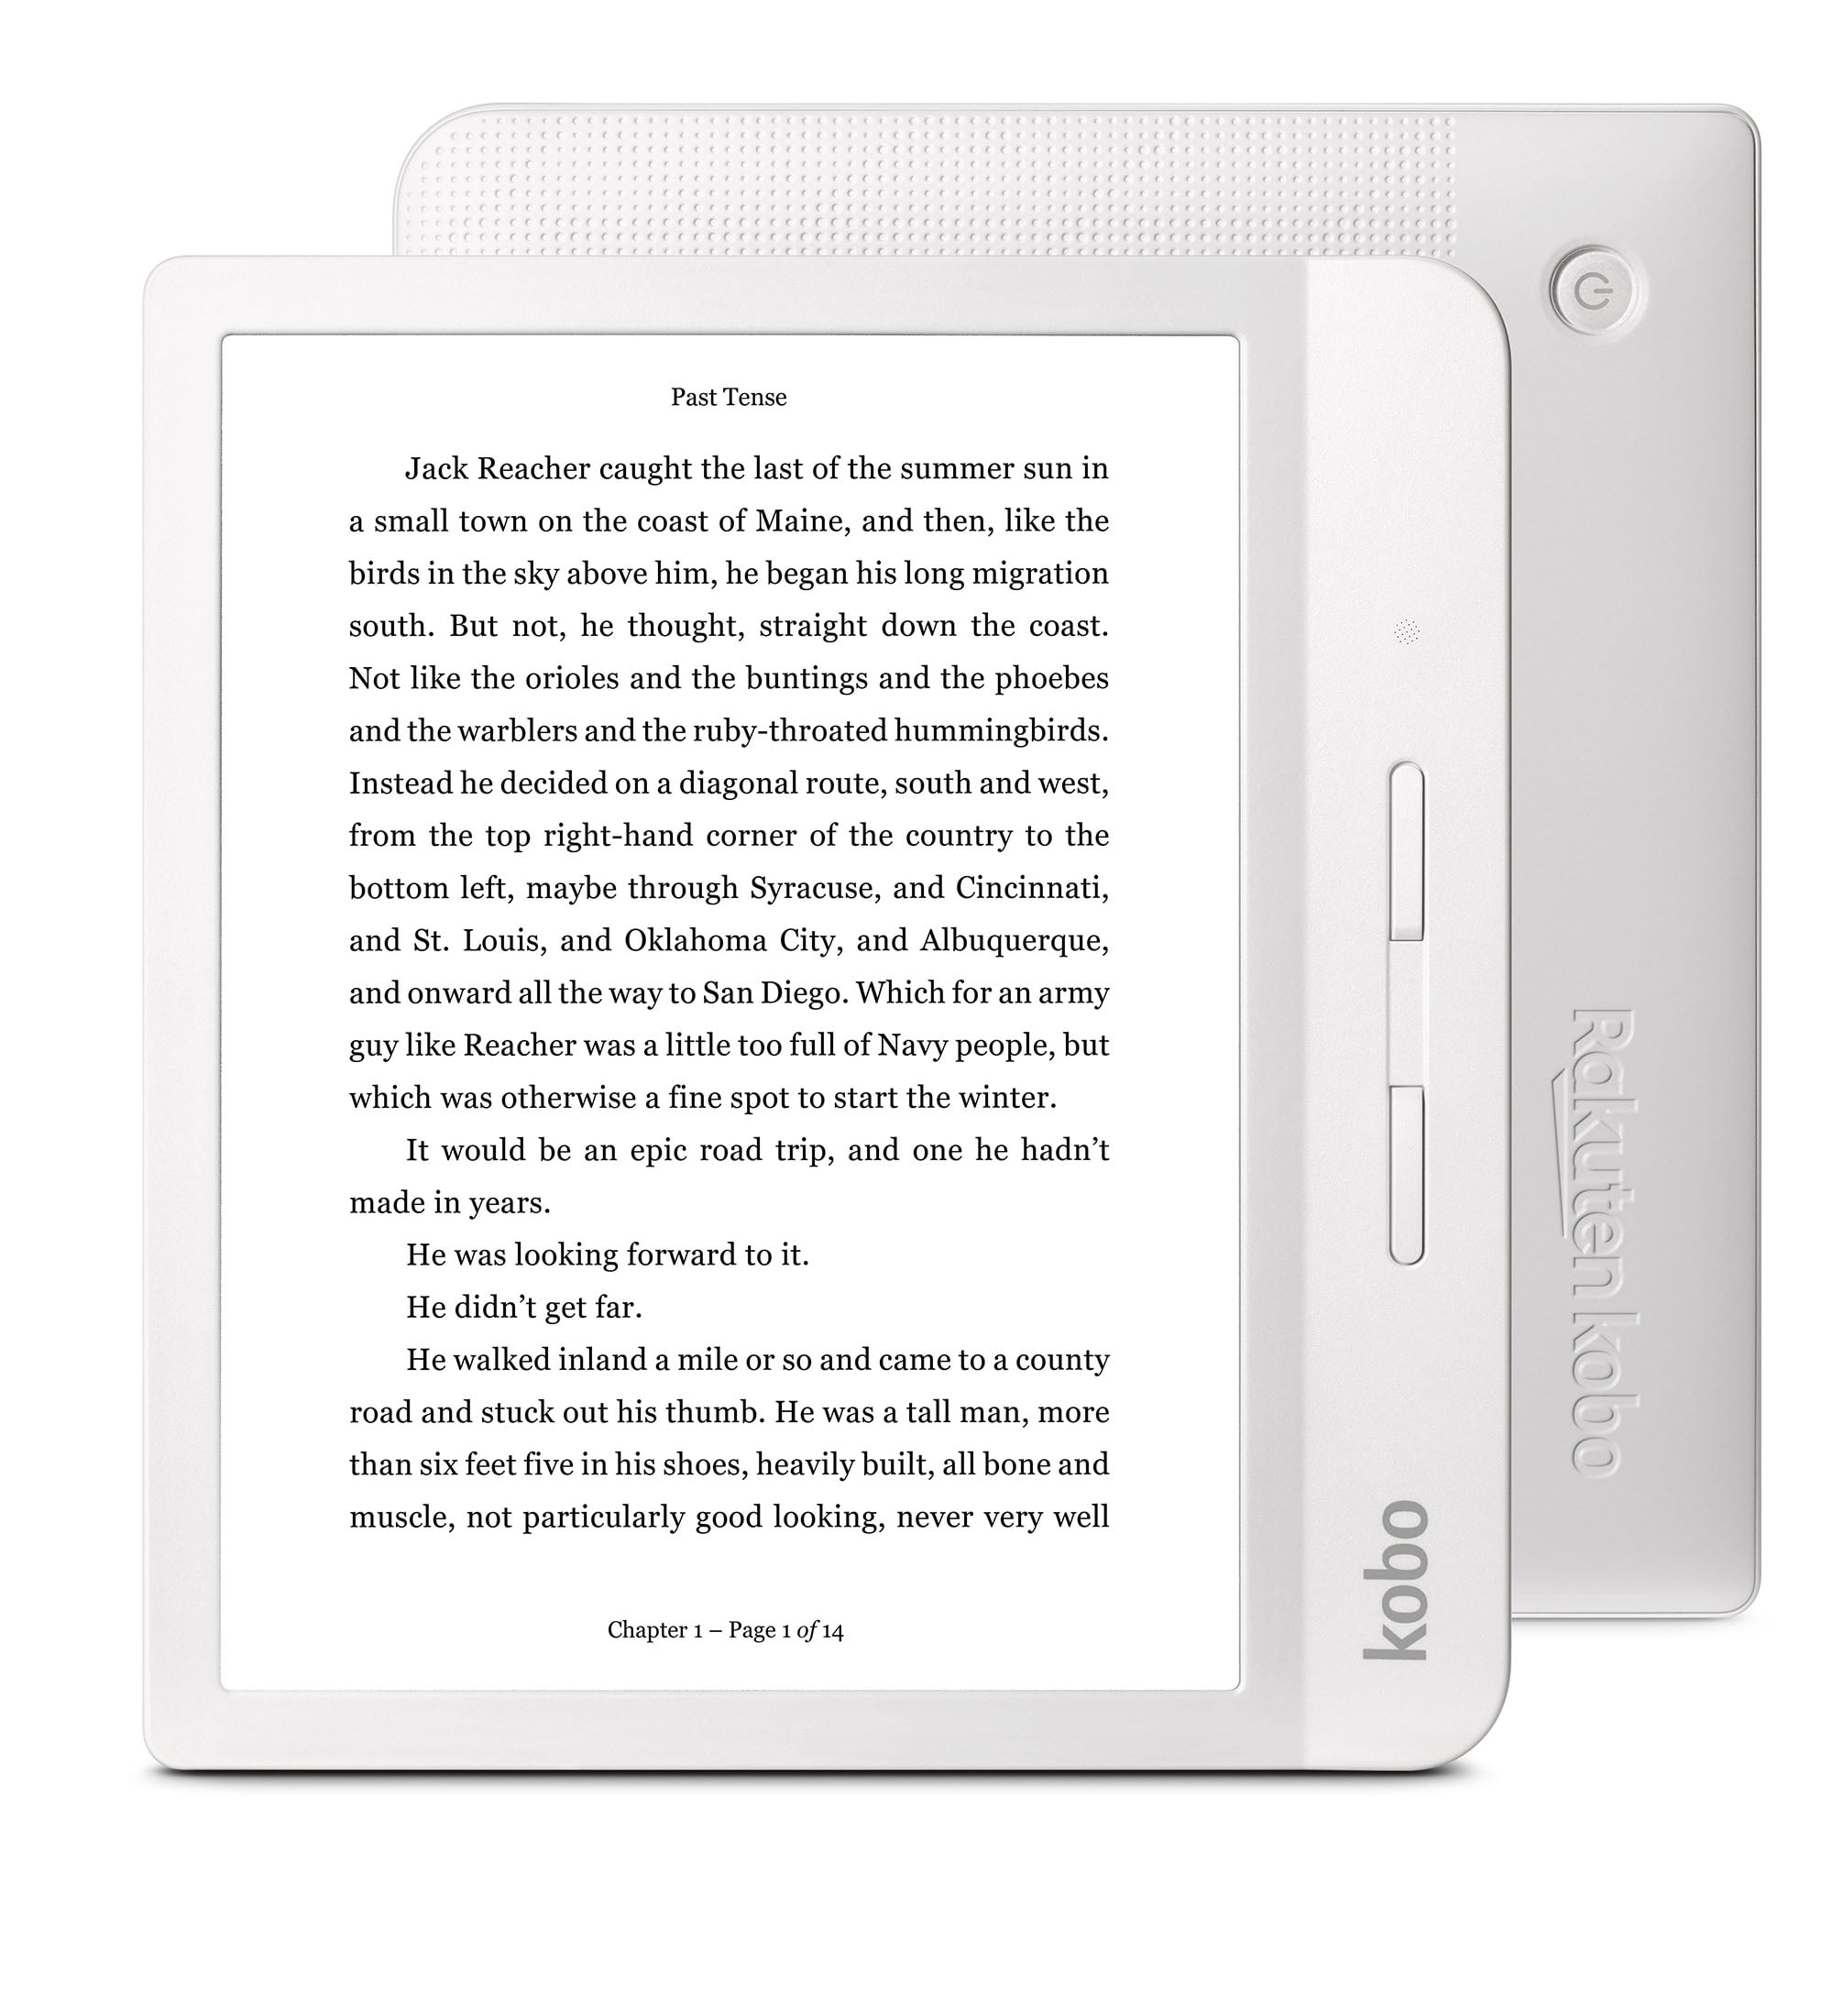 Basics Soporte multiángulo portátil para Tablets e-Readers y teléfonos Rakuten Kobo Clara HD lectore de e-Book Pantalla táctil 8 GB WiFi Negro Plateado E-Reader